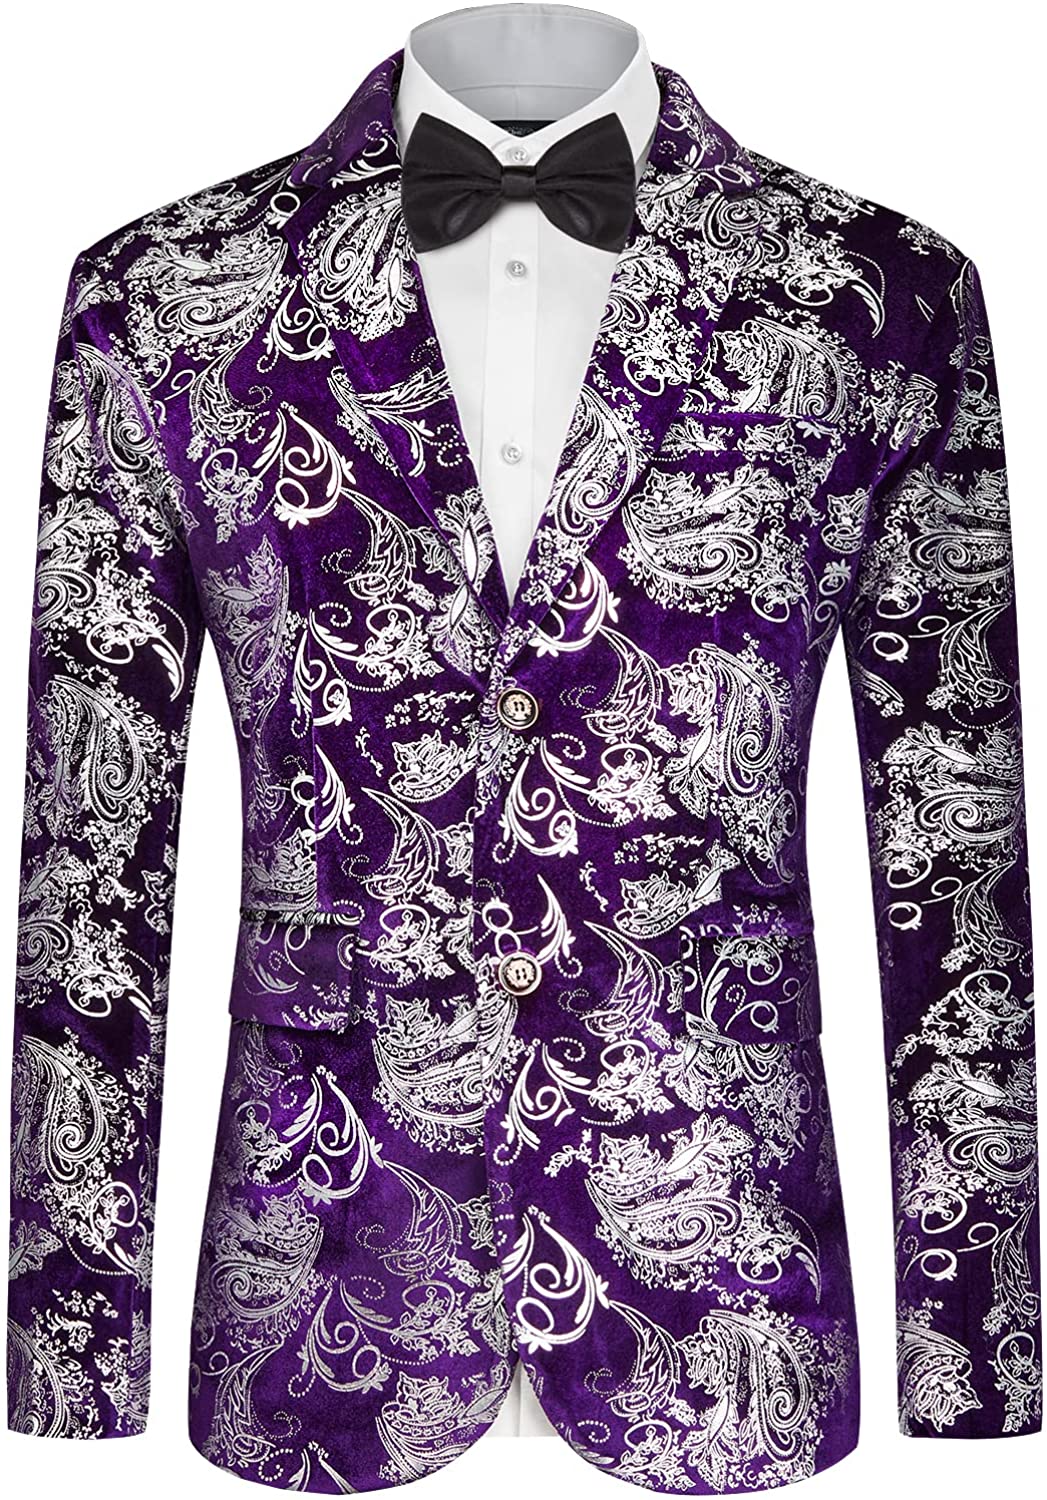 MAGE MALE Men's Two Button Dress Party Floral Suit Jacket Notched Lapel Slim Fit Stylish Blazer 